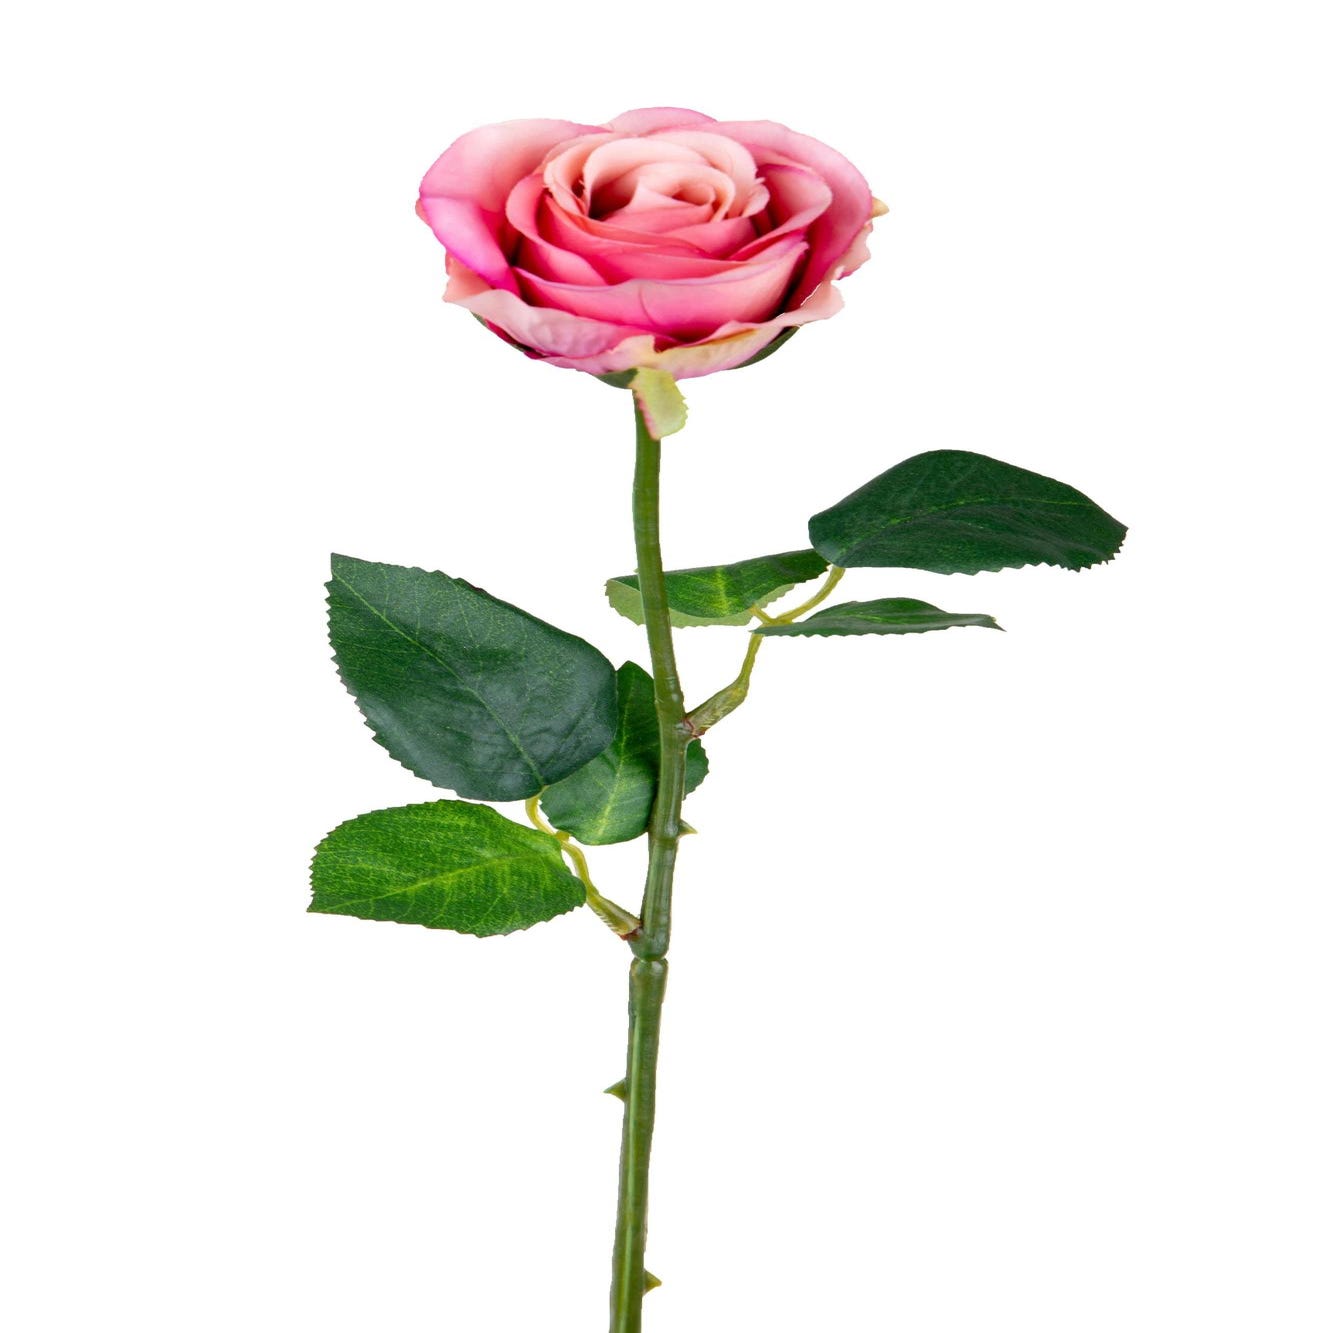 Vendita: rose artificiali di altissima qualità, disponibili in 3